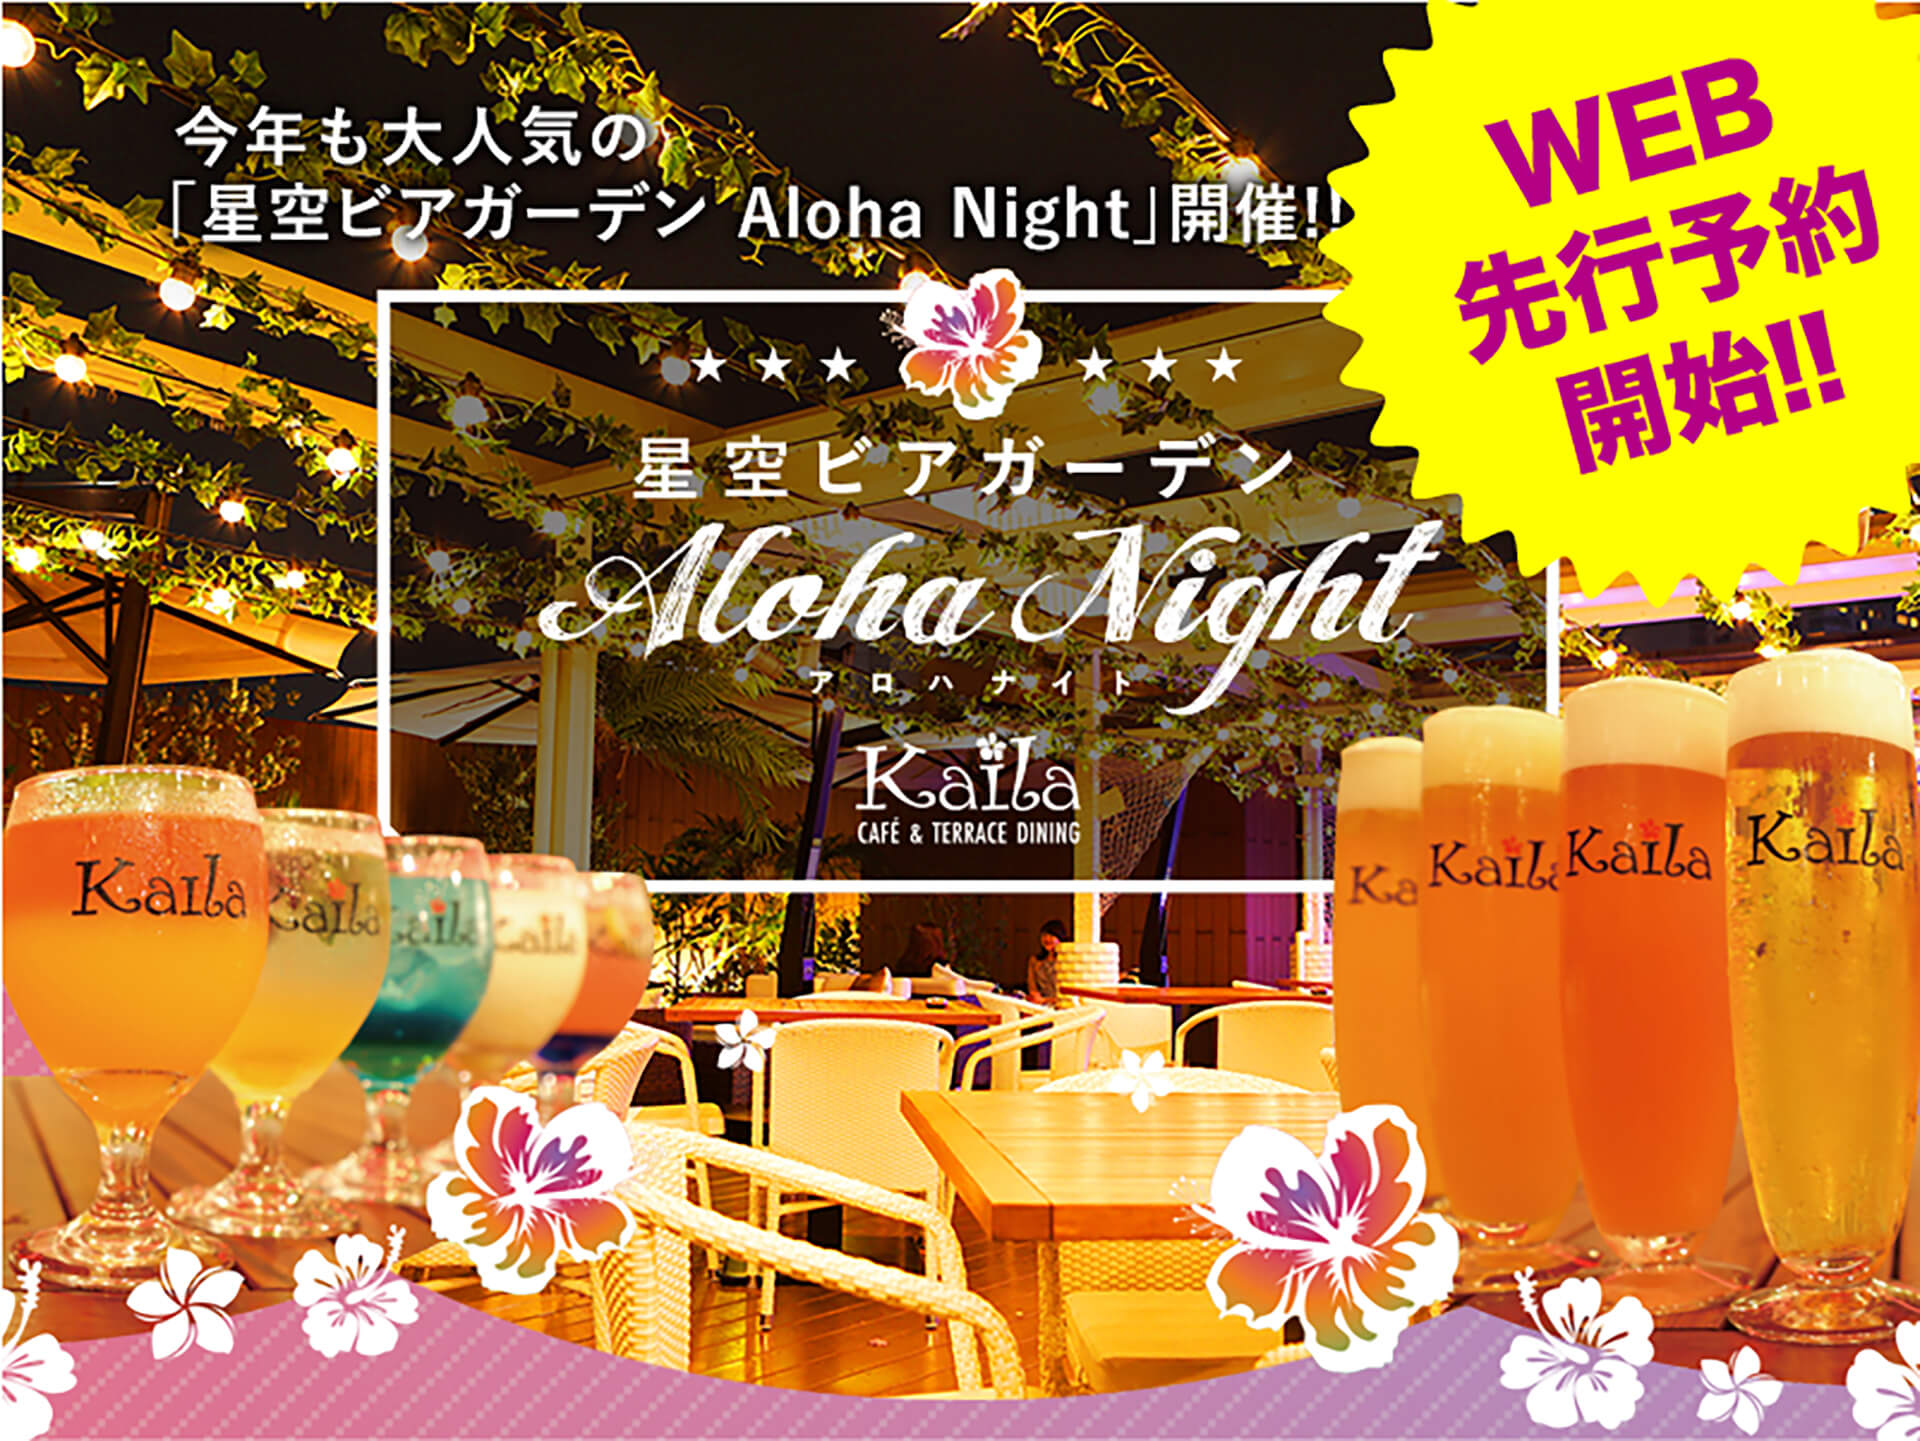 カイラ渋谷の「星空ビアガーデン Aloha Night」バナー